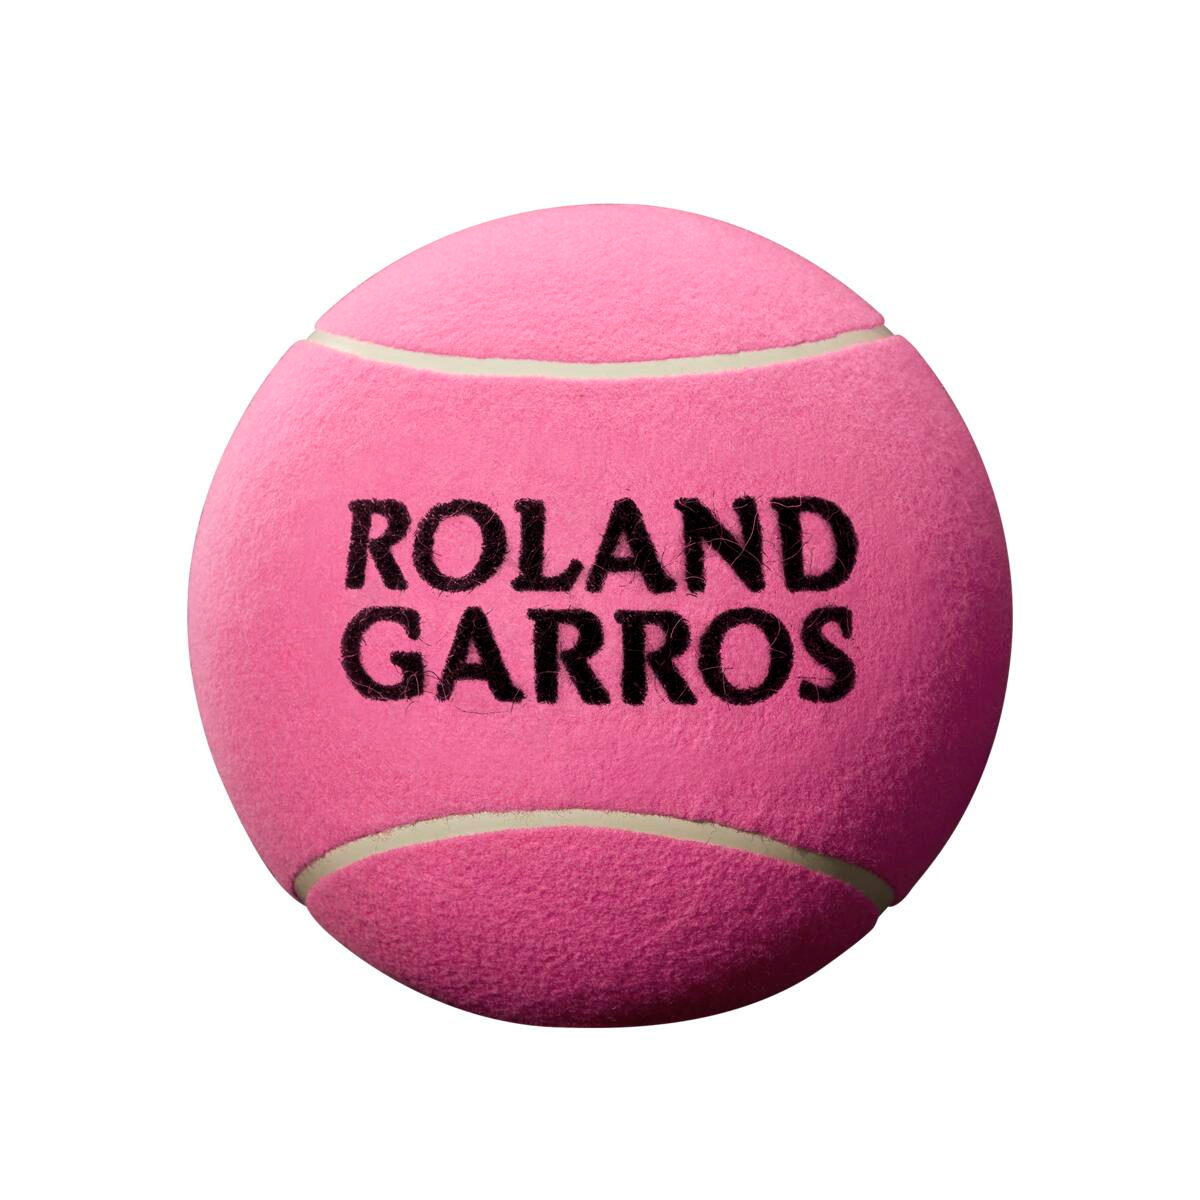 фото Теннисный мяч wilson roland garros 9 jumbo 1 шт pink